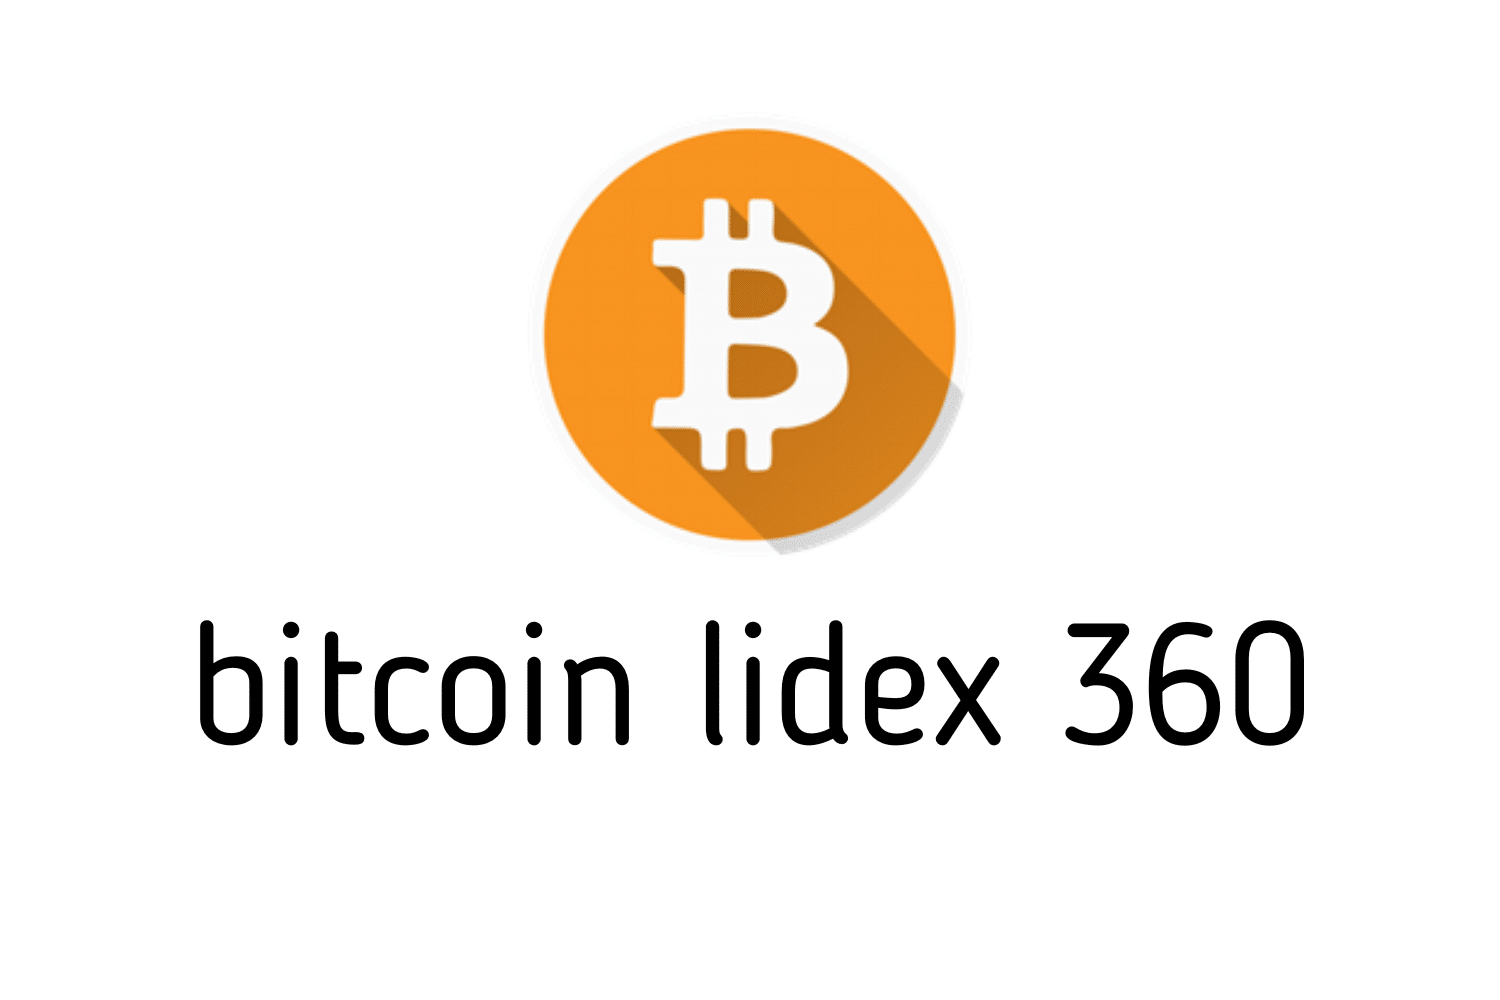 Inscrição Bitcoin Lidex 360